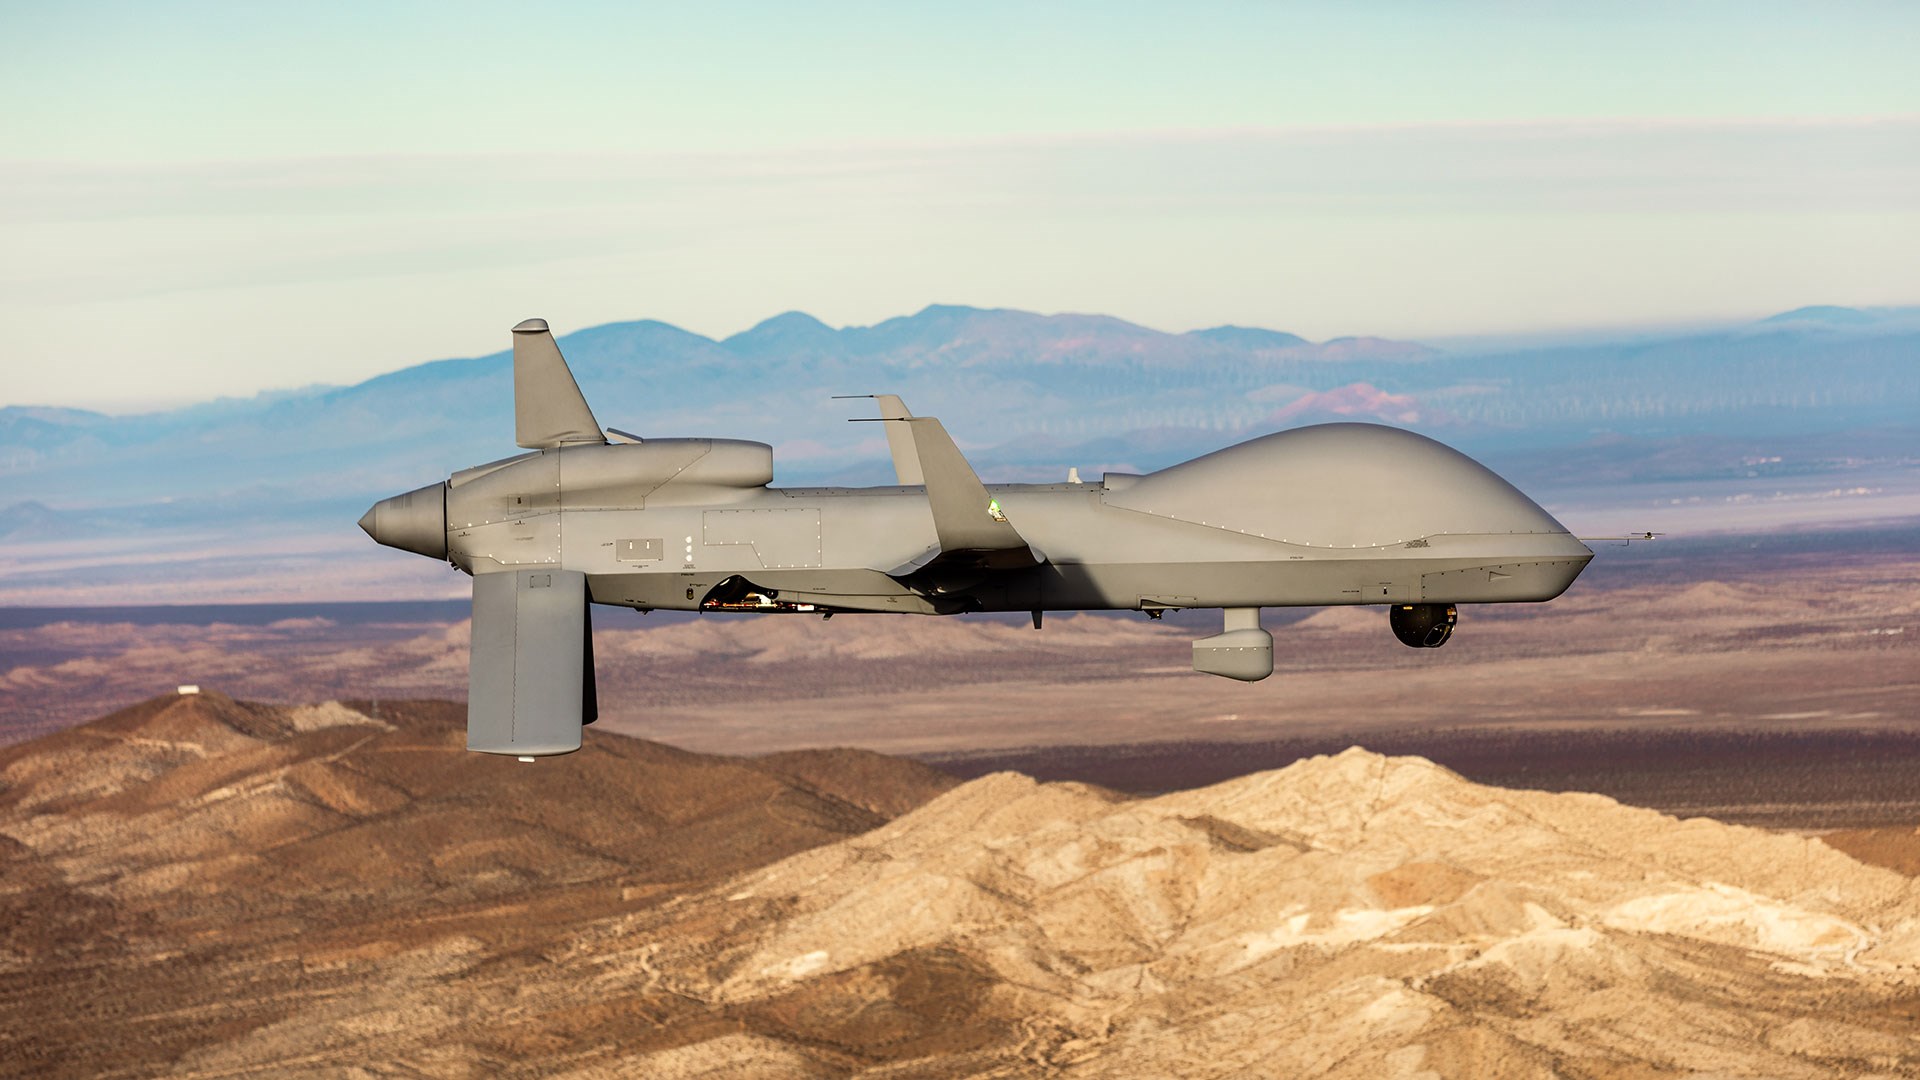 Yeni Drone Radari Kucuk Ahsap Dronlari Bile Tespit Edebiliyor169627 0